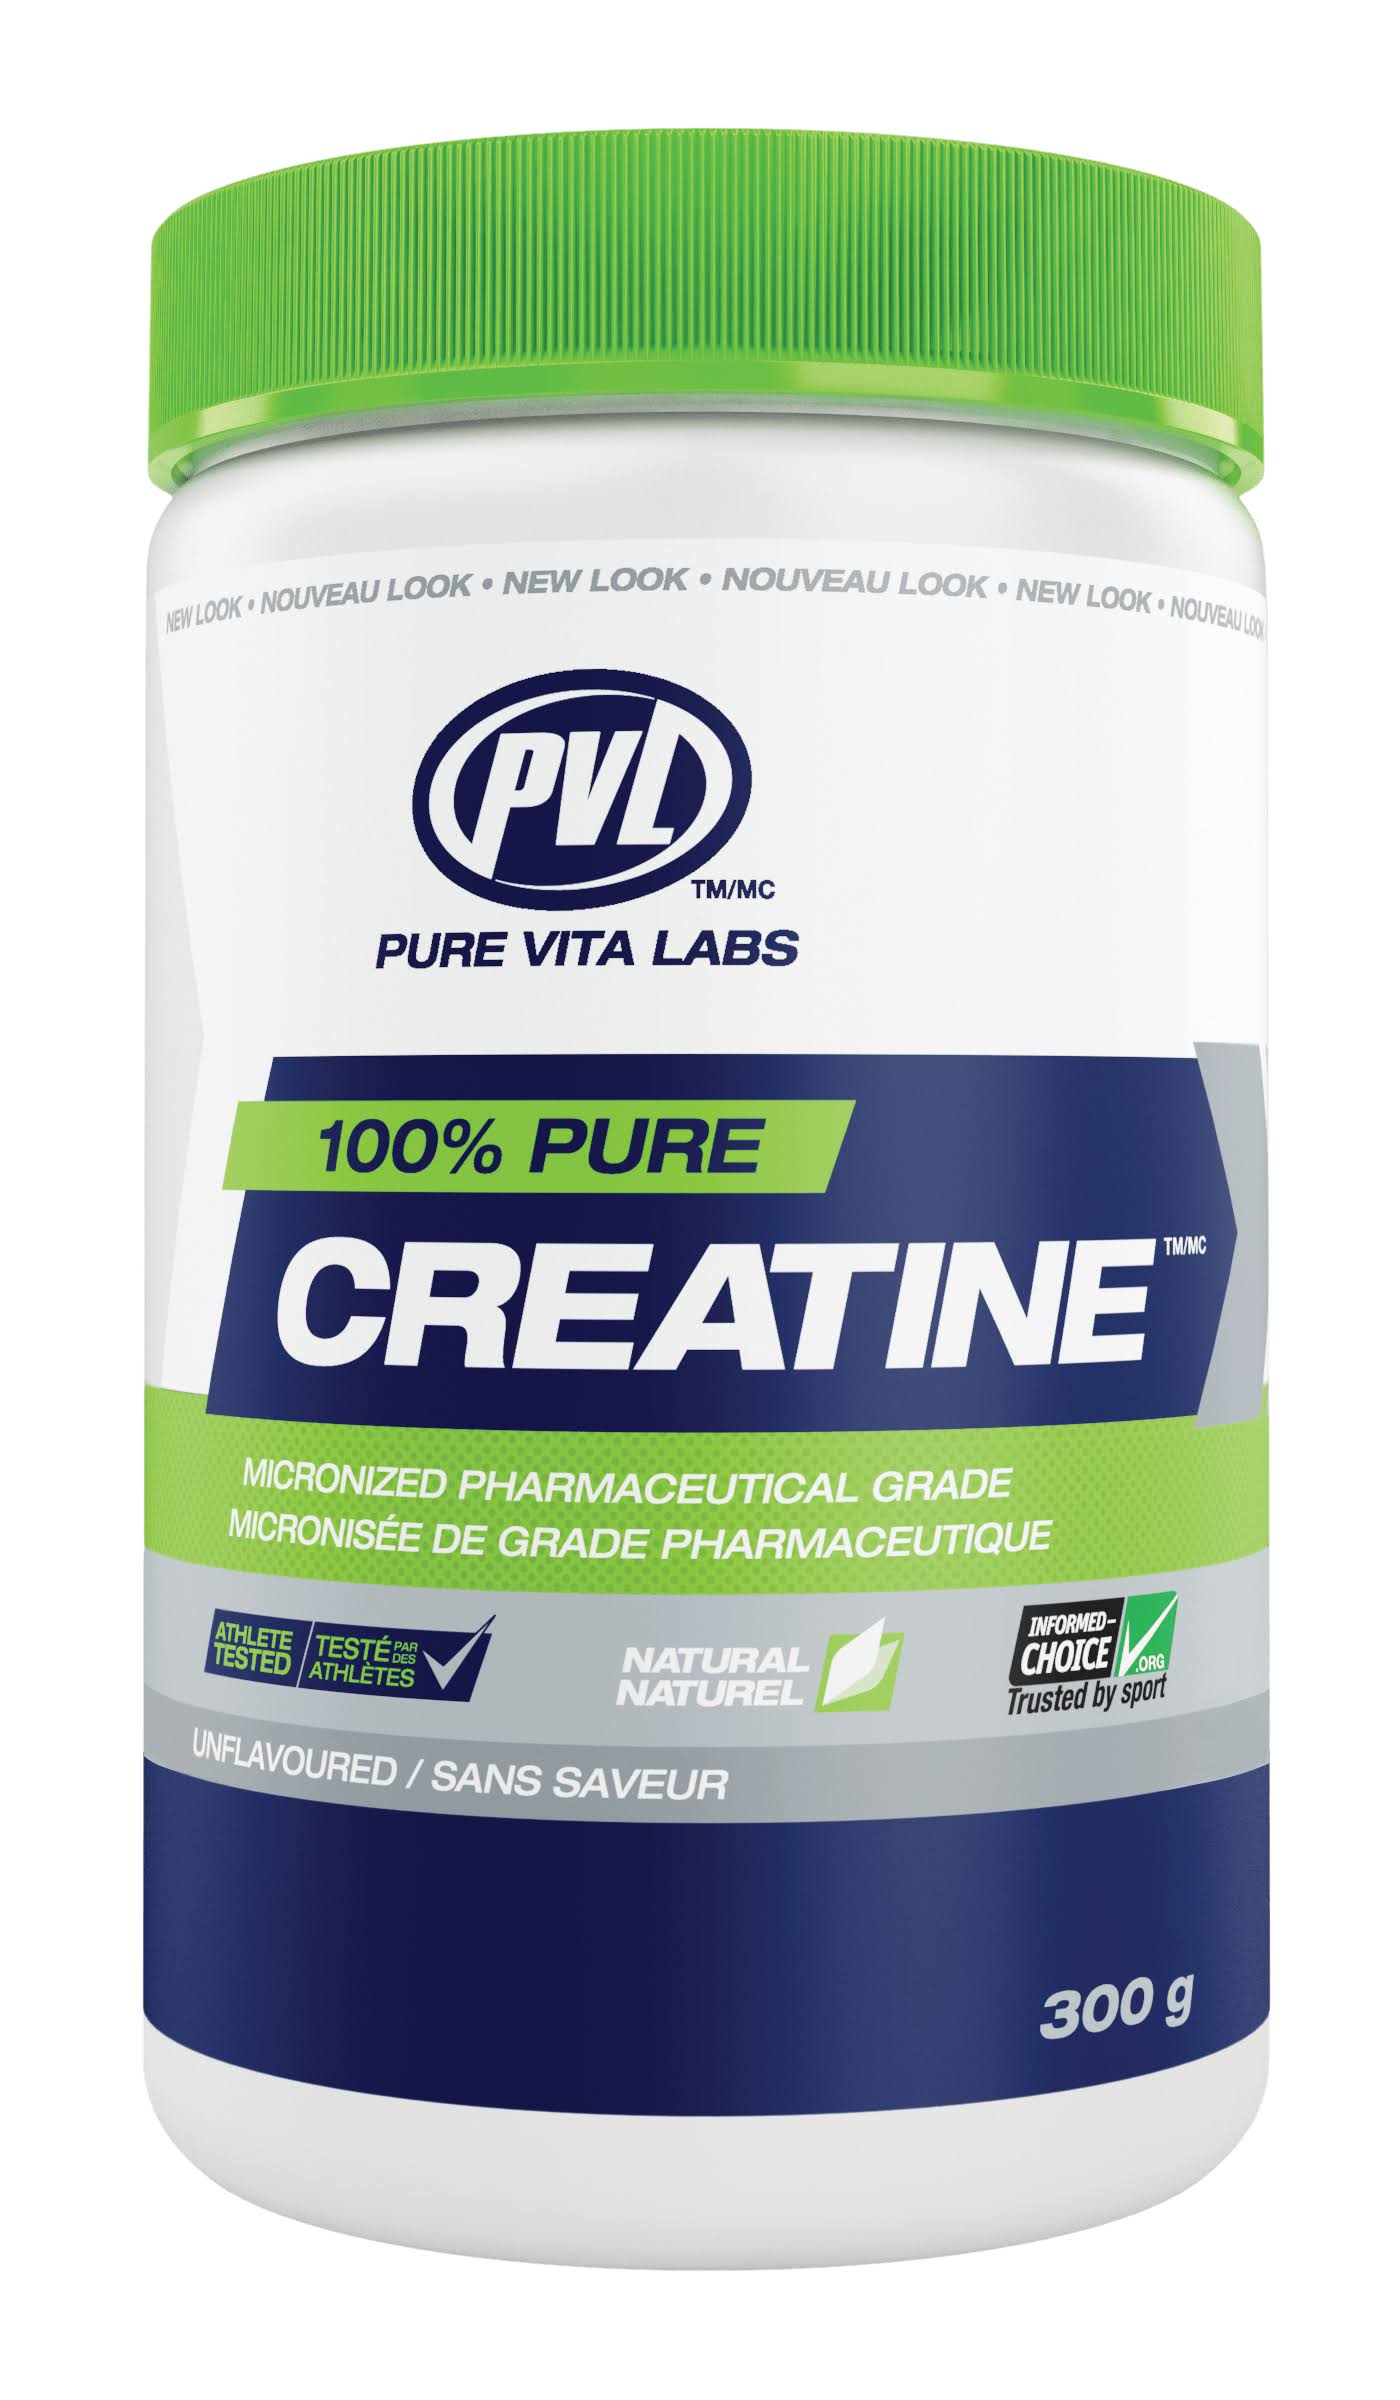 PVL Essentials Creatine Powder - 300g